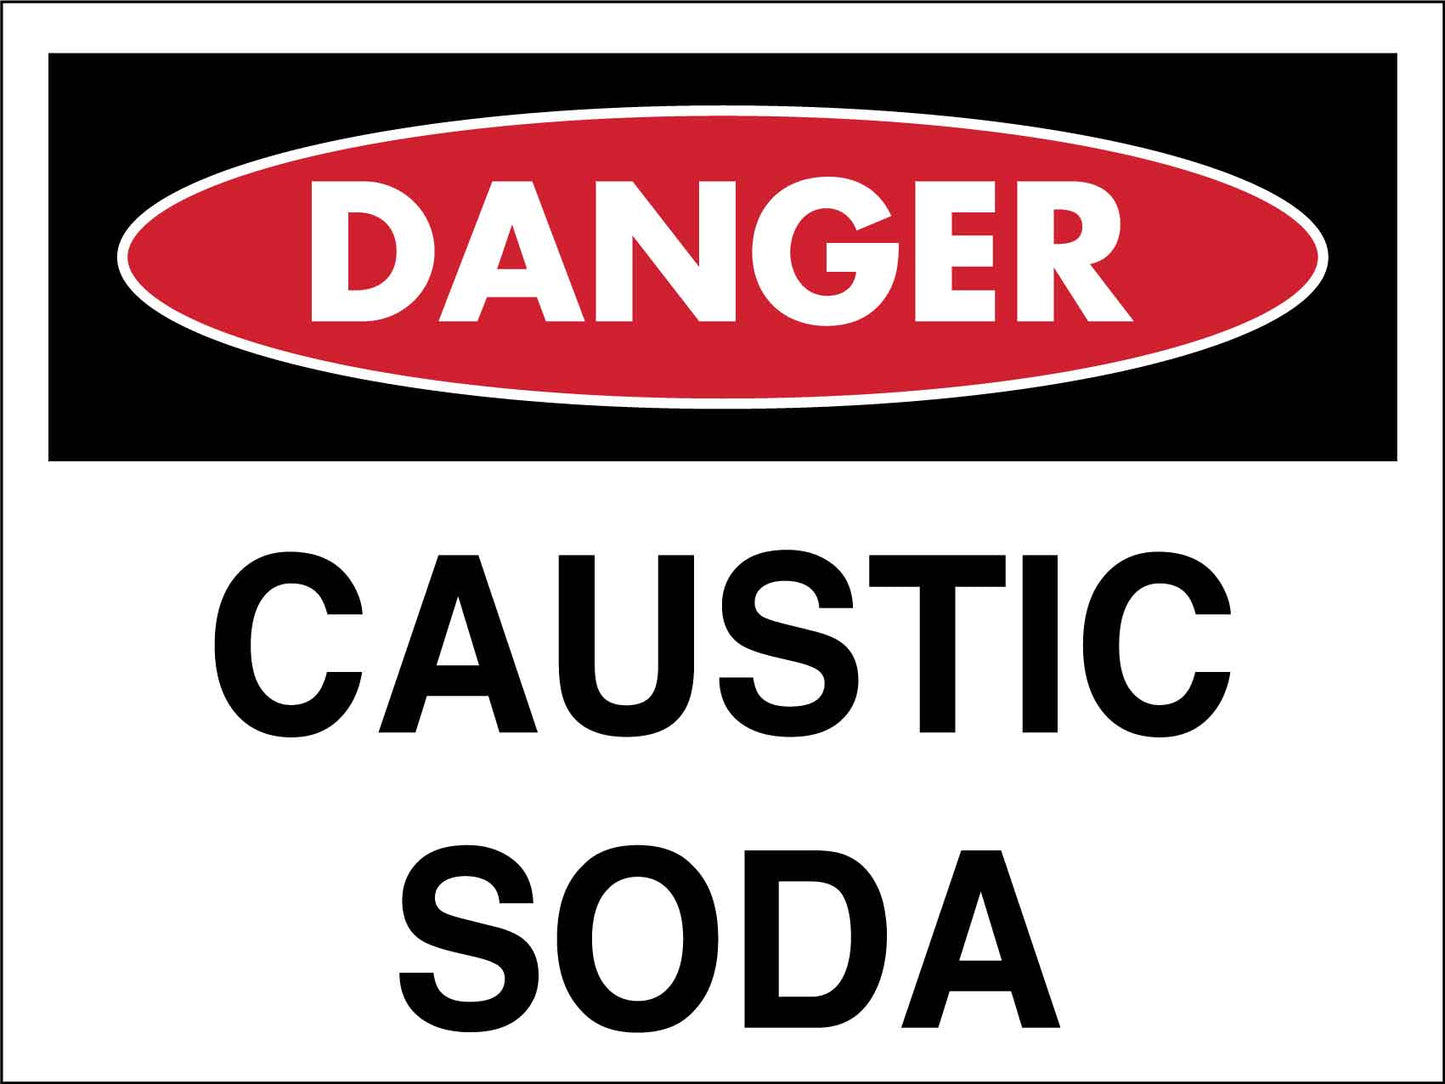 Danger Caustic Soda Sign